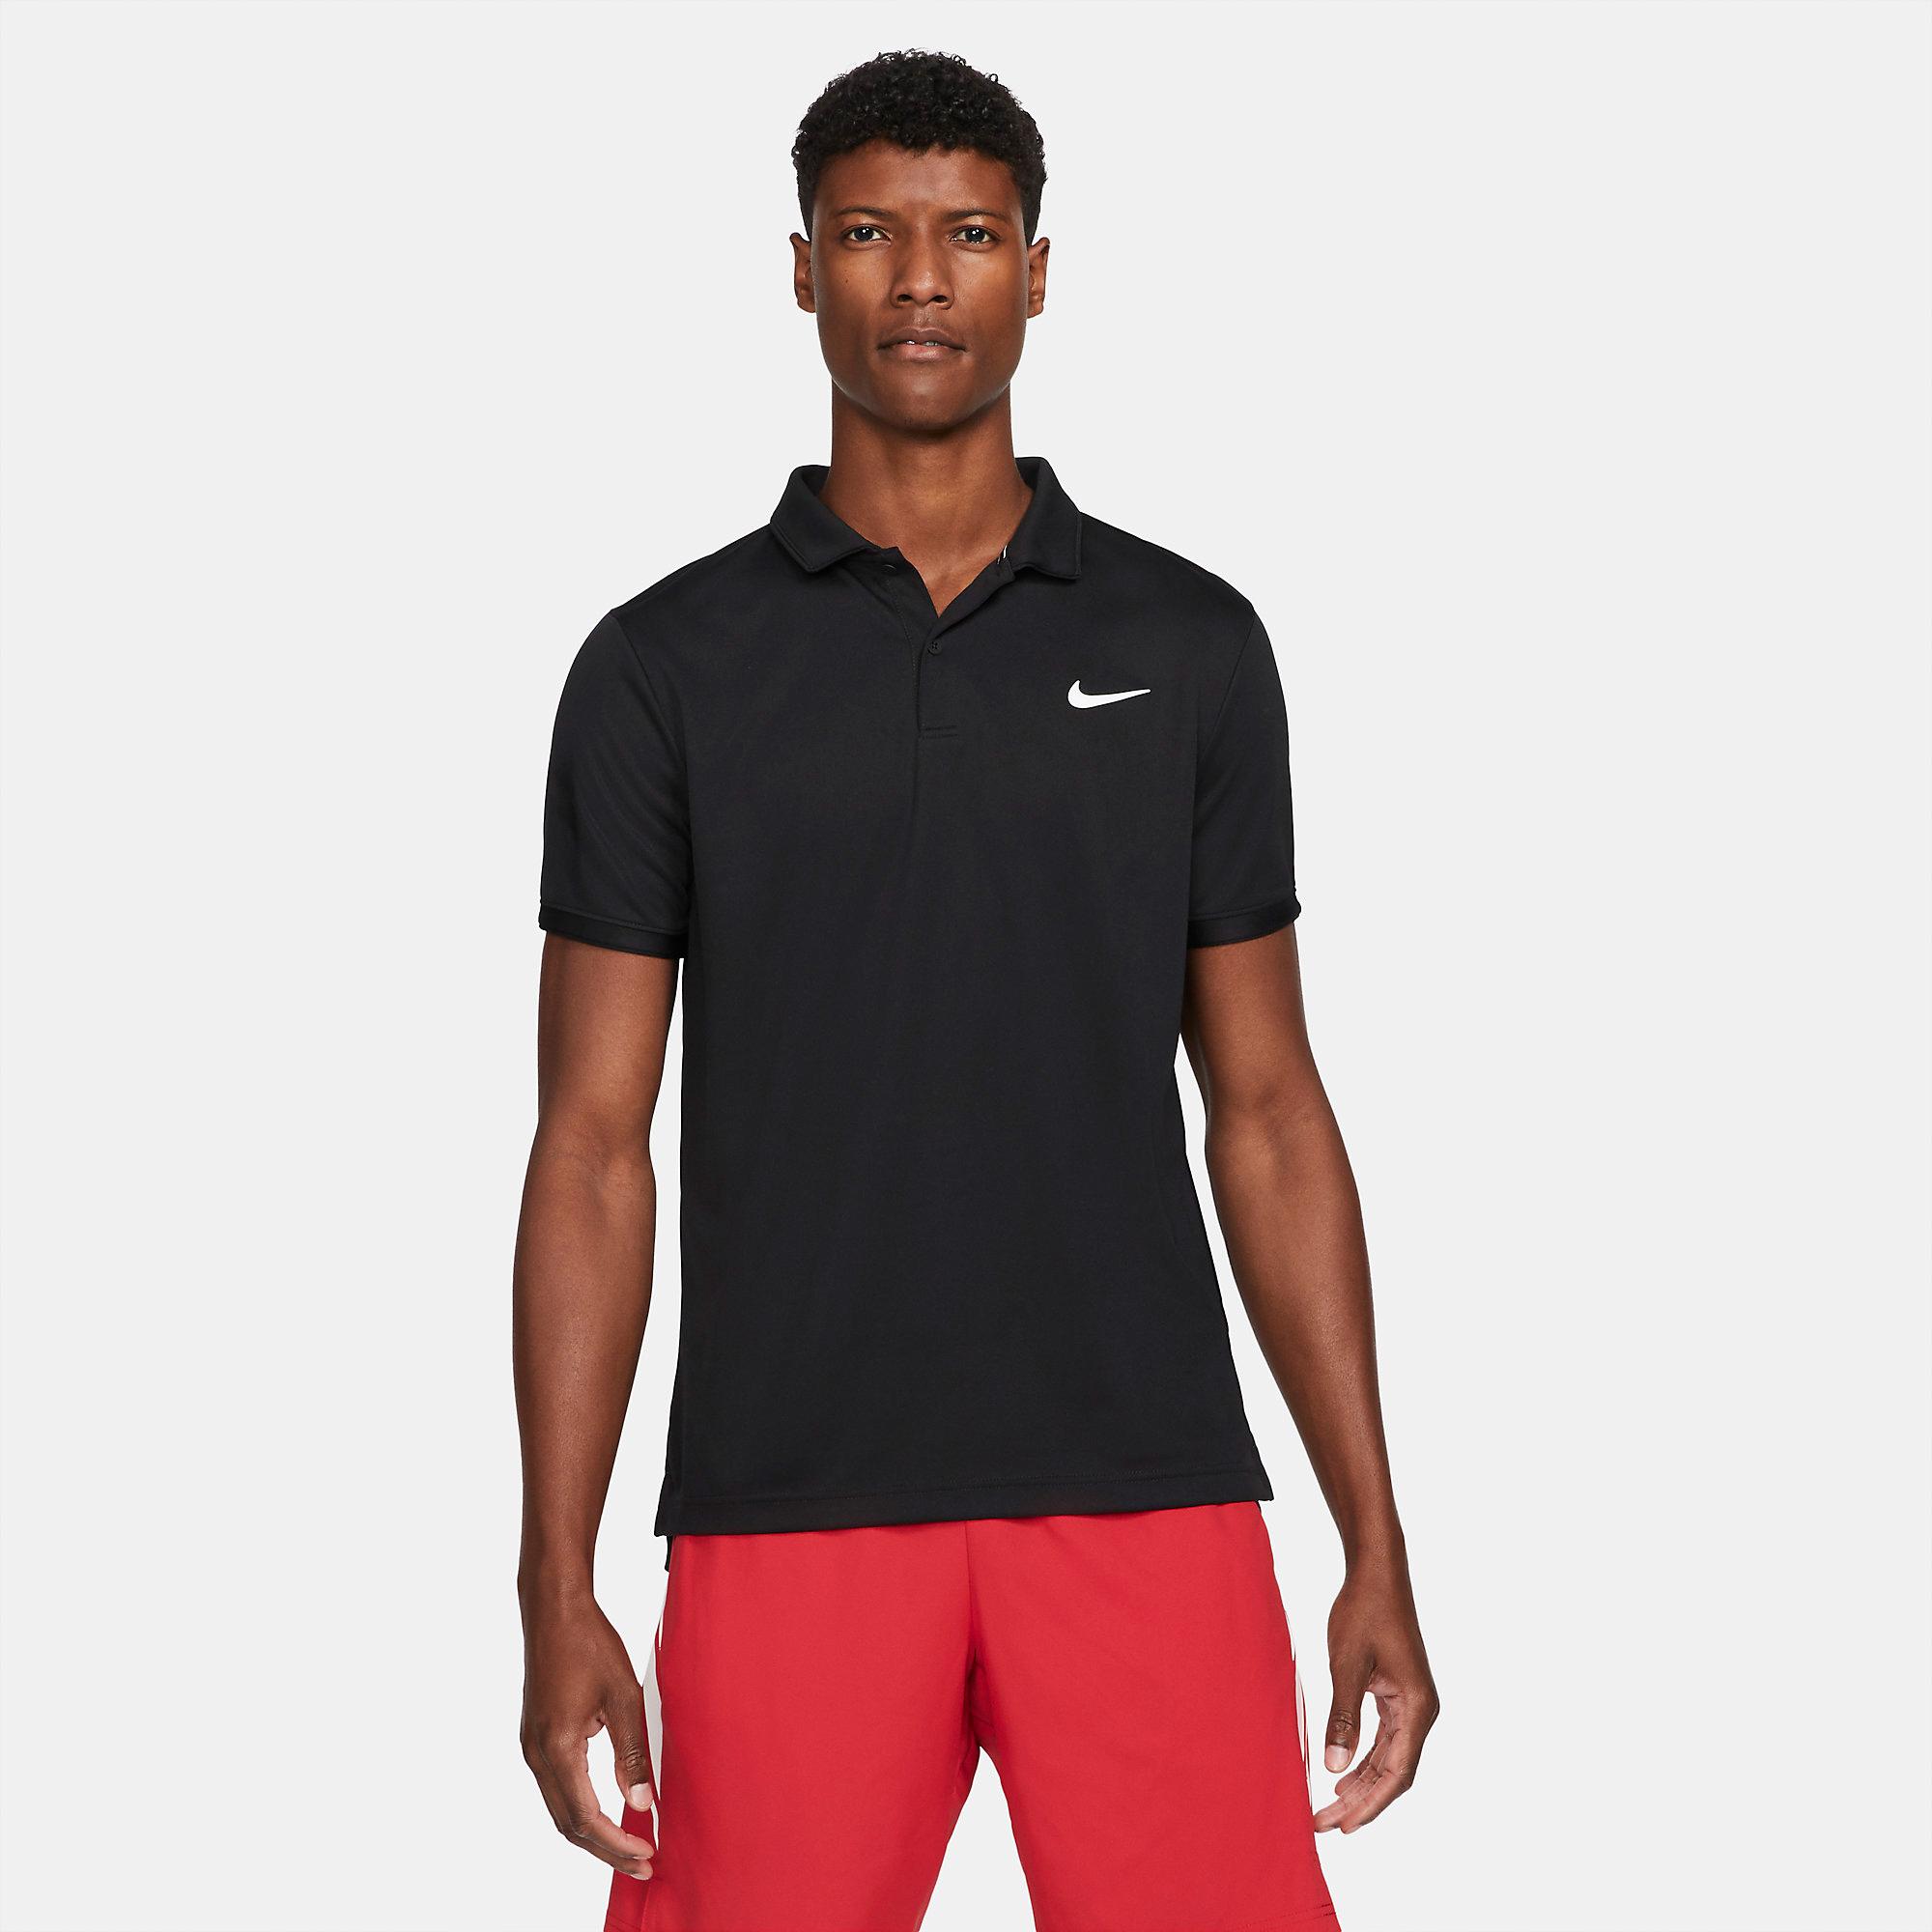 Nike Mens Victory Tennis Polo - Black - Tennisnuts.com